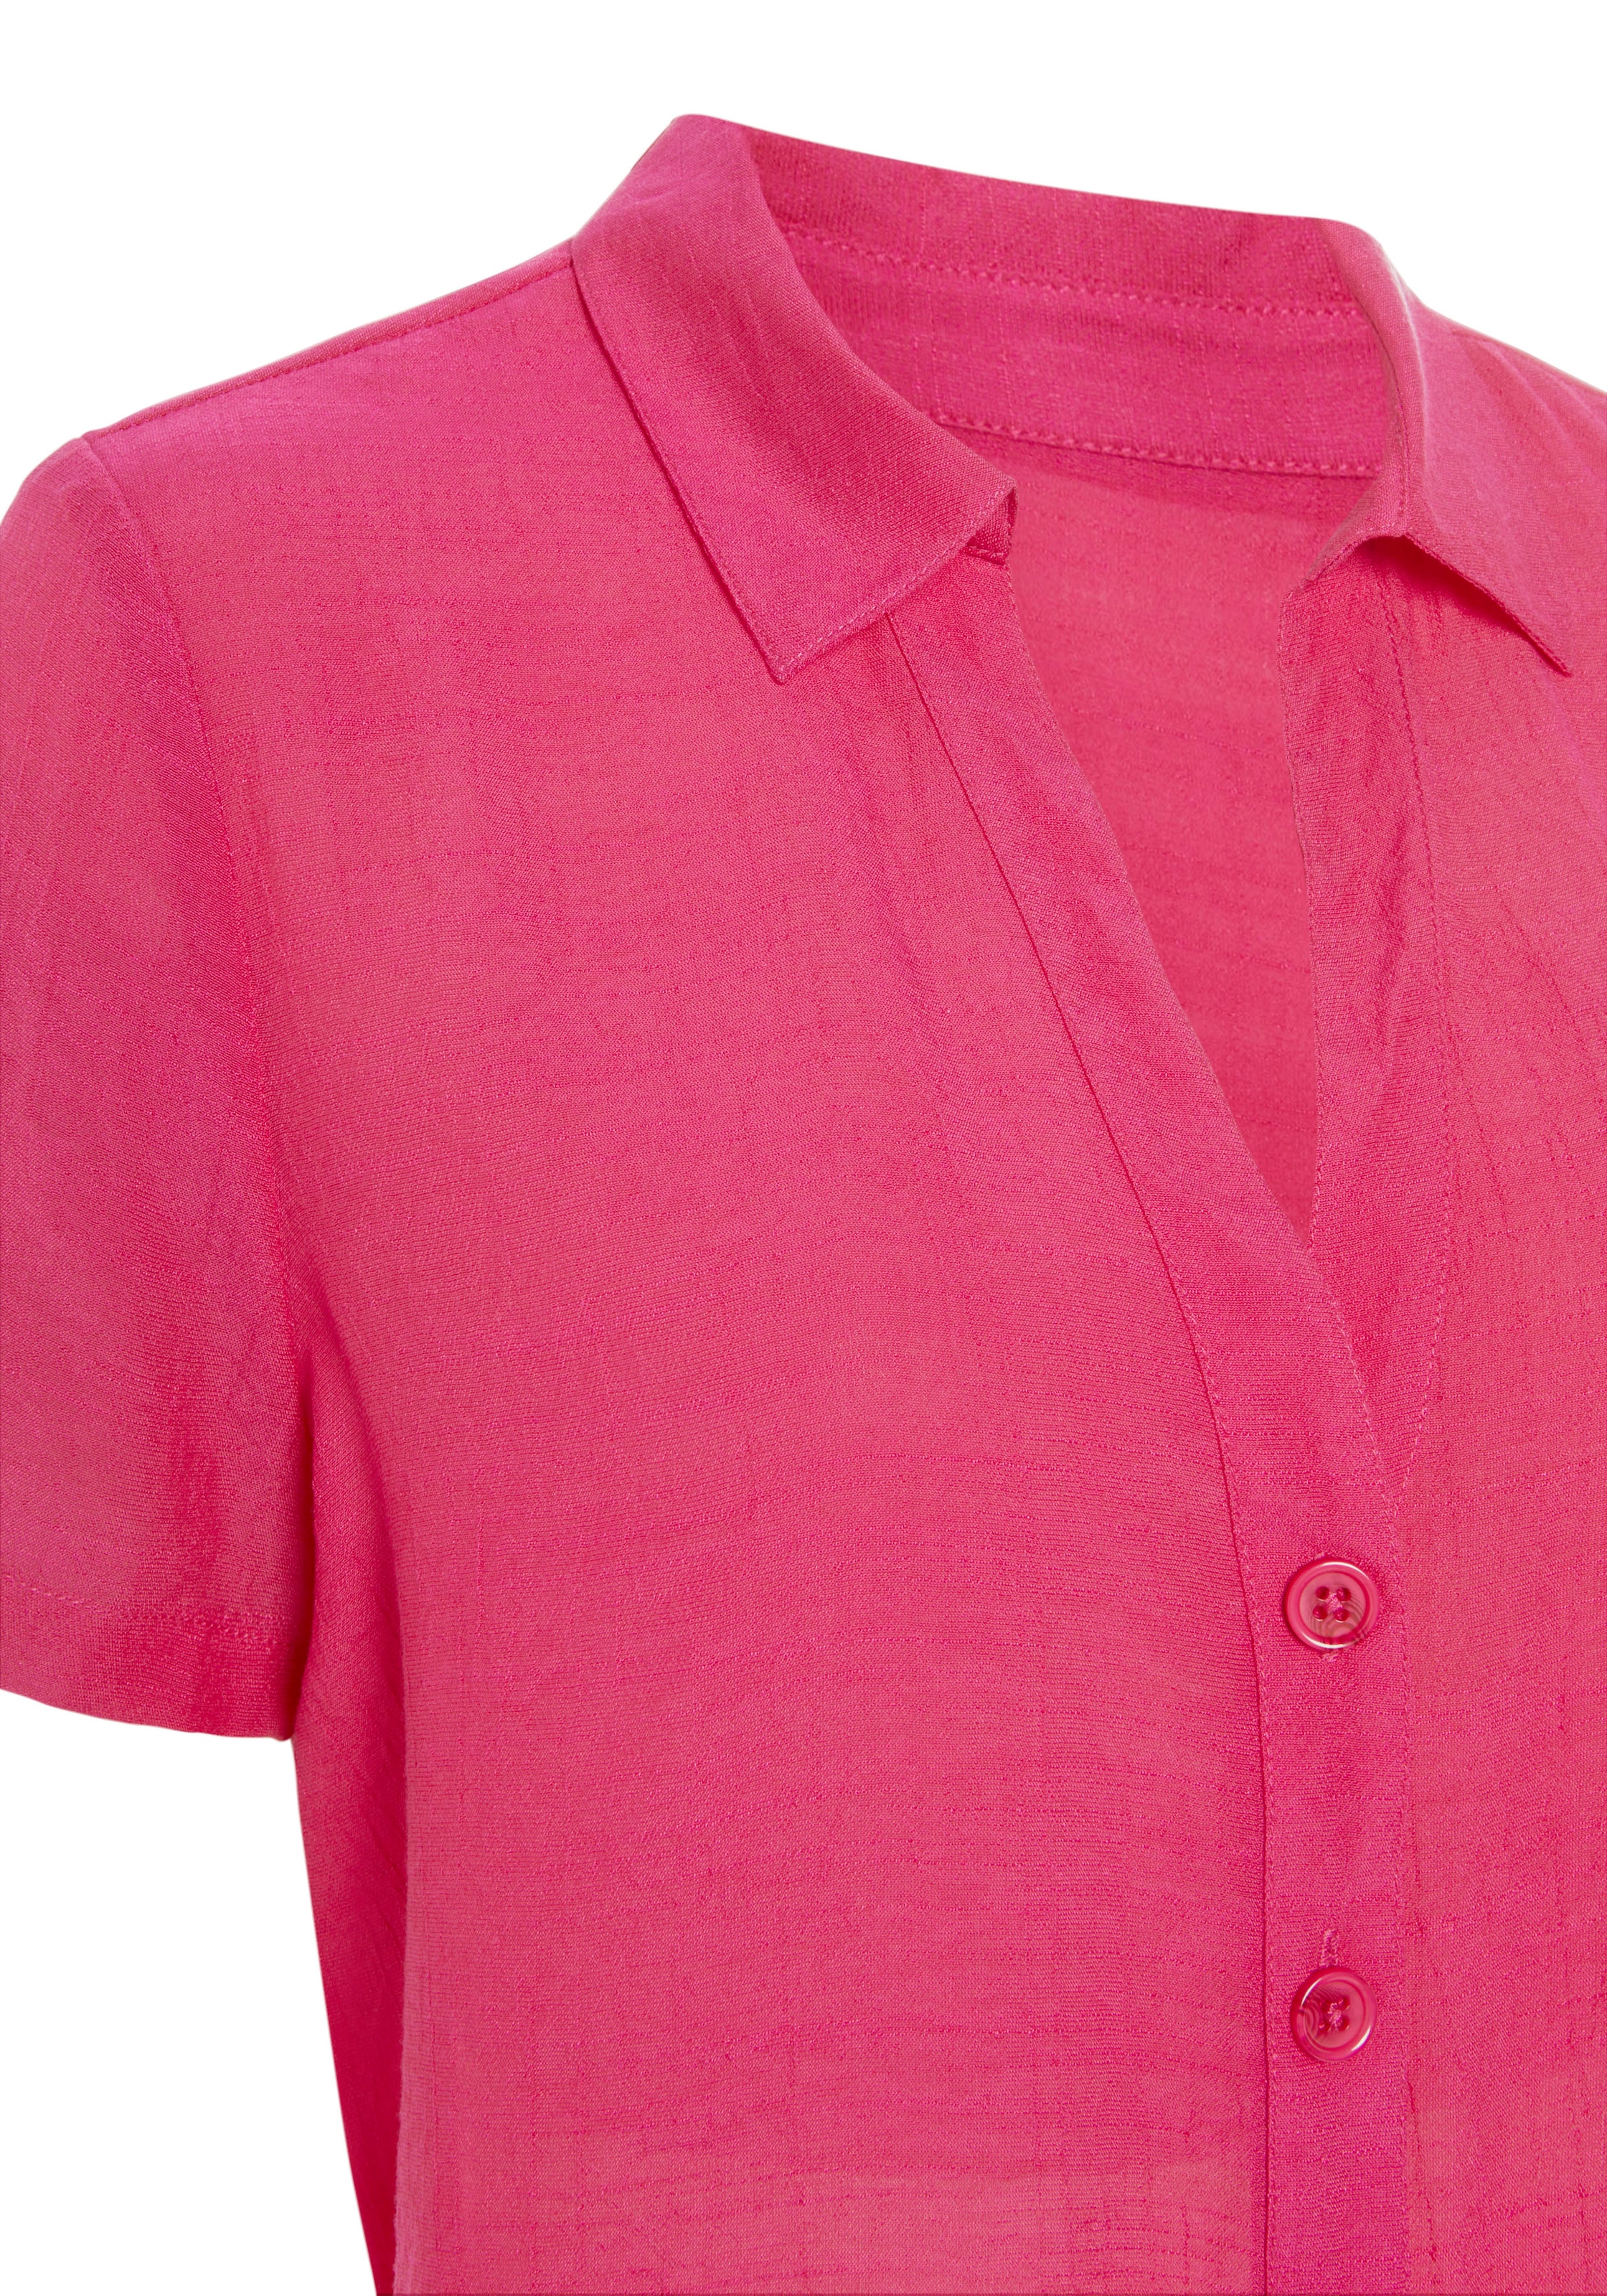 OTTO und Knopfleiste, mit Hemdkragen im Shop Vivance Kurzarmbluse, Online Strandmode Hemdbluse, bestellen